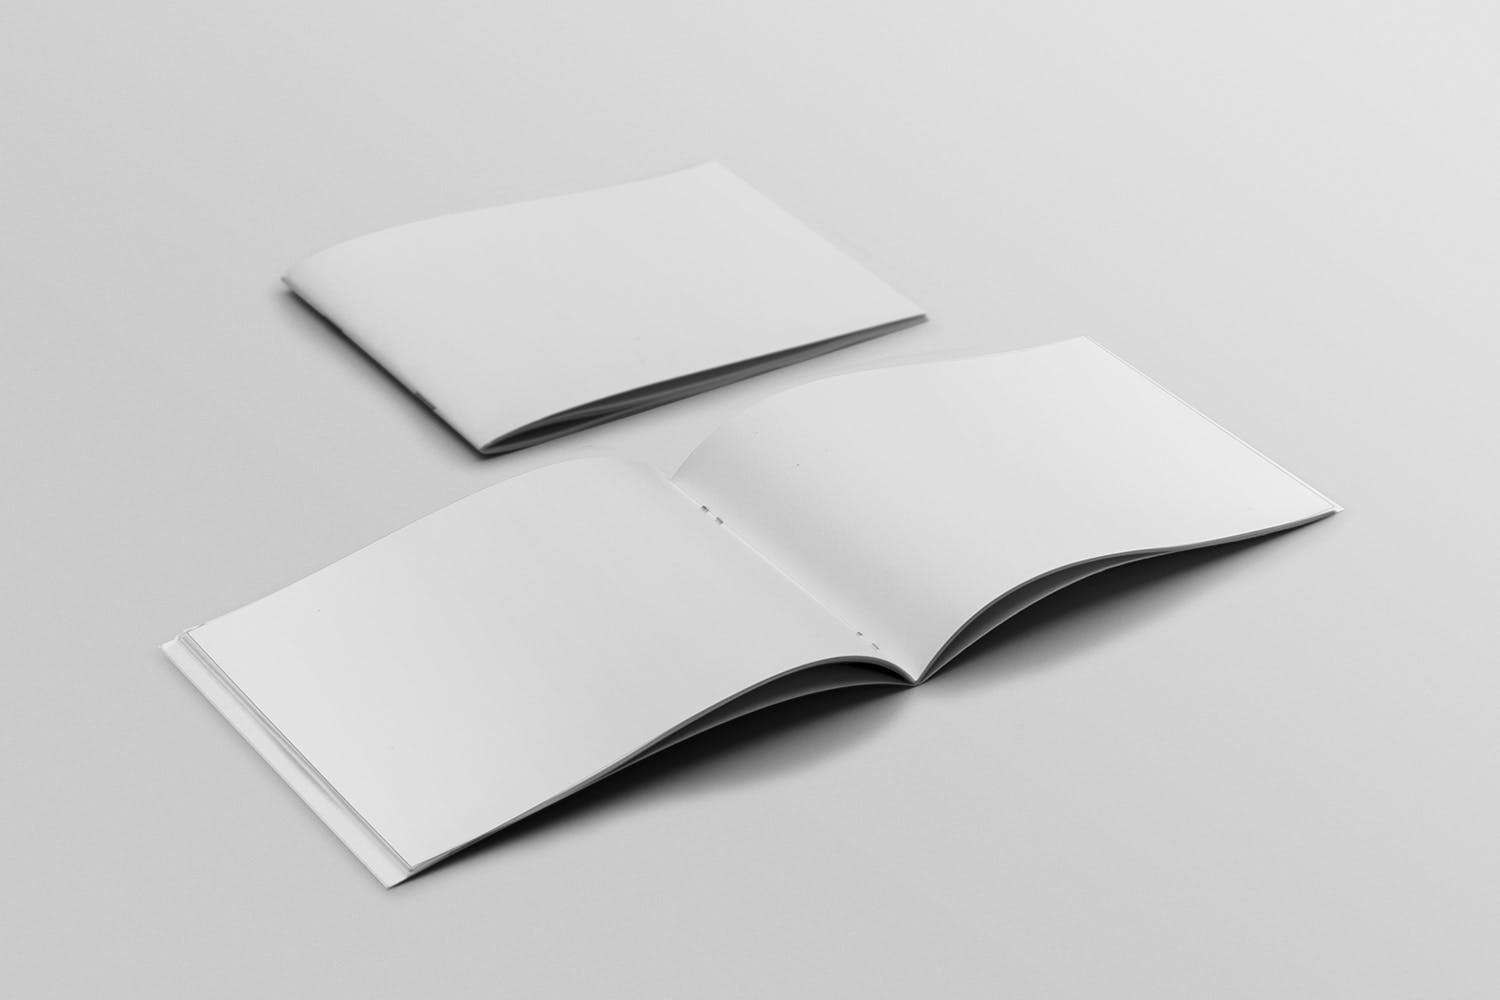 宣传画册/企业画册封面&内页版式设计45度角效果图样机非凡图库精选 Cover & Open Landscape Brochure Mockup插图(1)